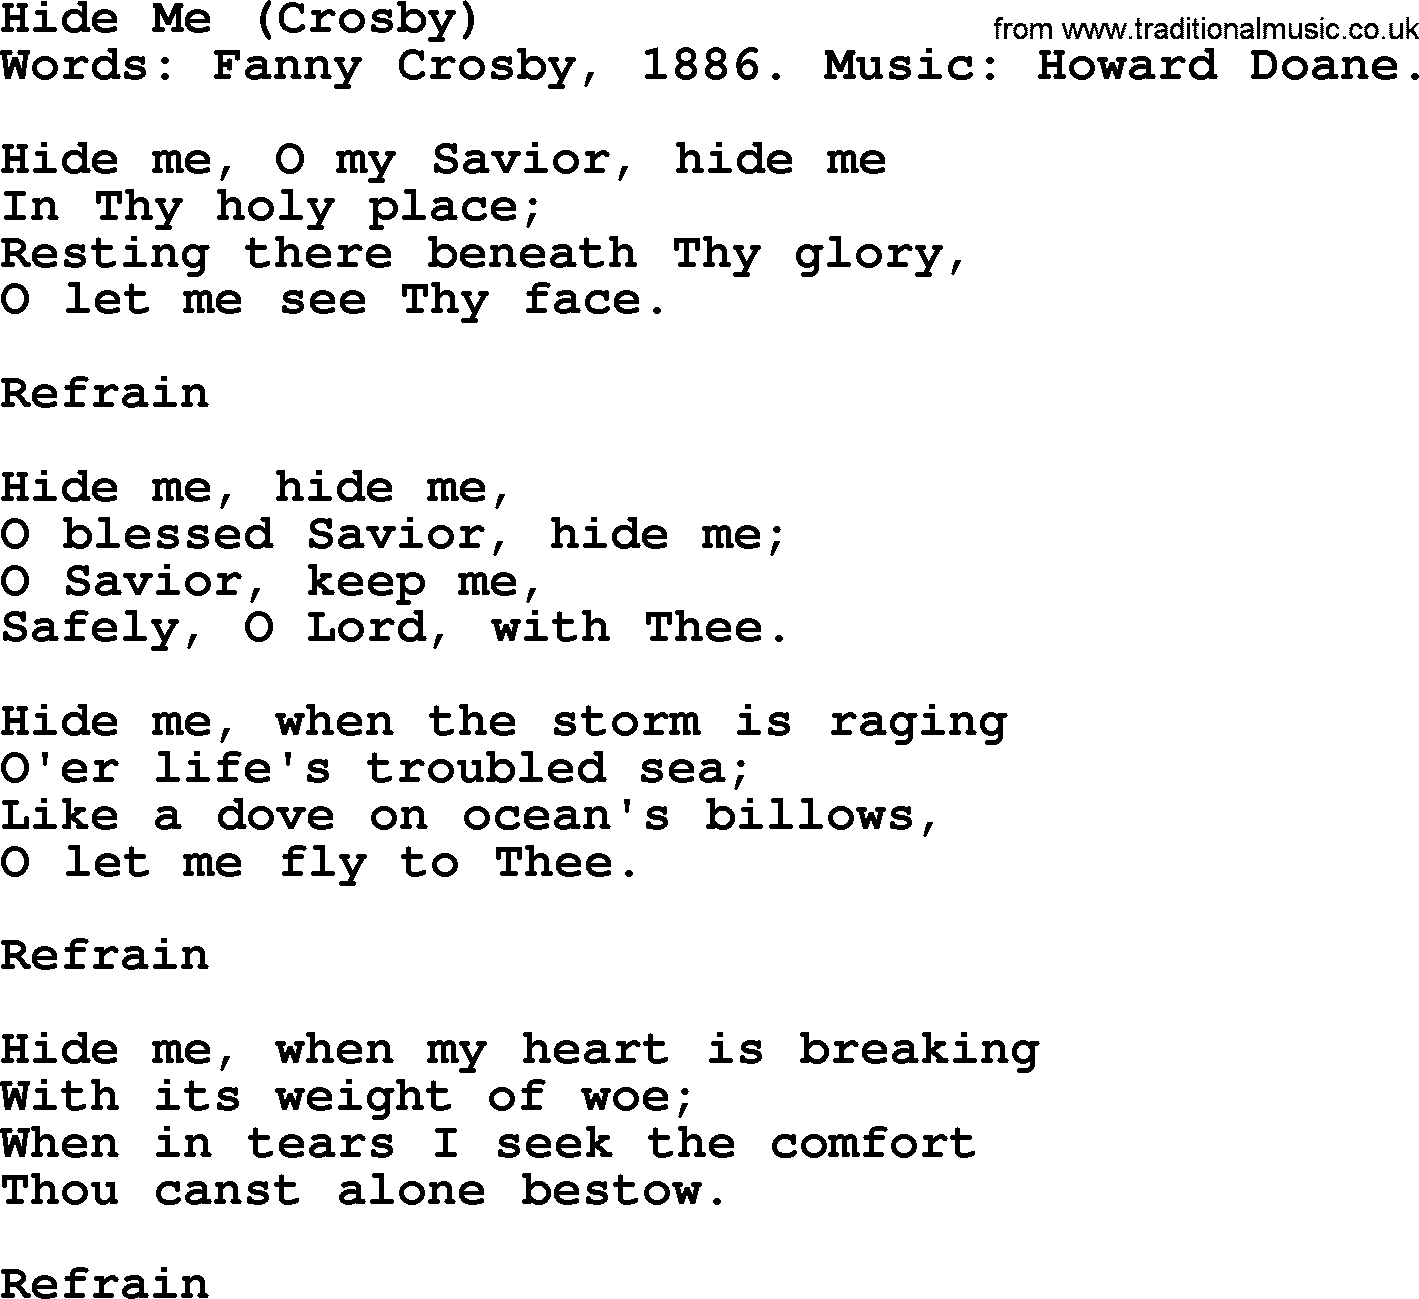 Fanny Crosby song: Hide Me, lyrics